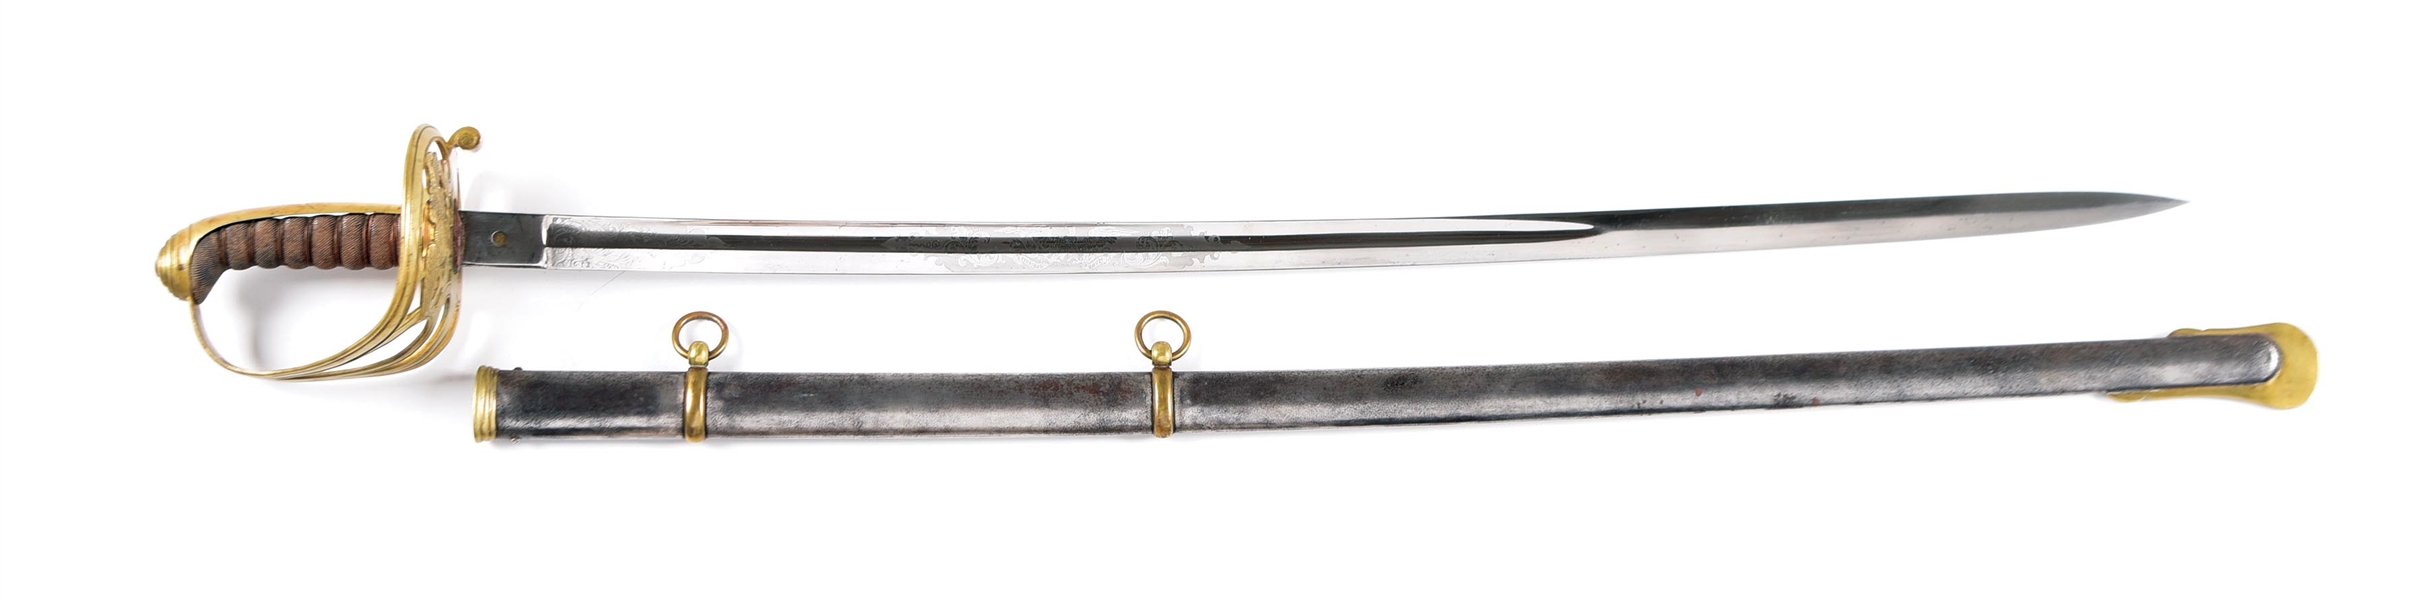 US 1850S CLAUBERG NON-REGULATION BRITISH PATTERN 1827 SWORD WITH BRASS HILT.